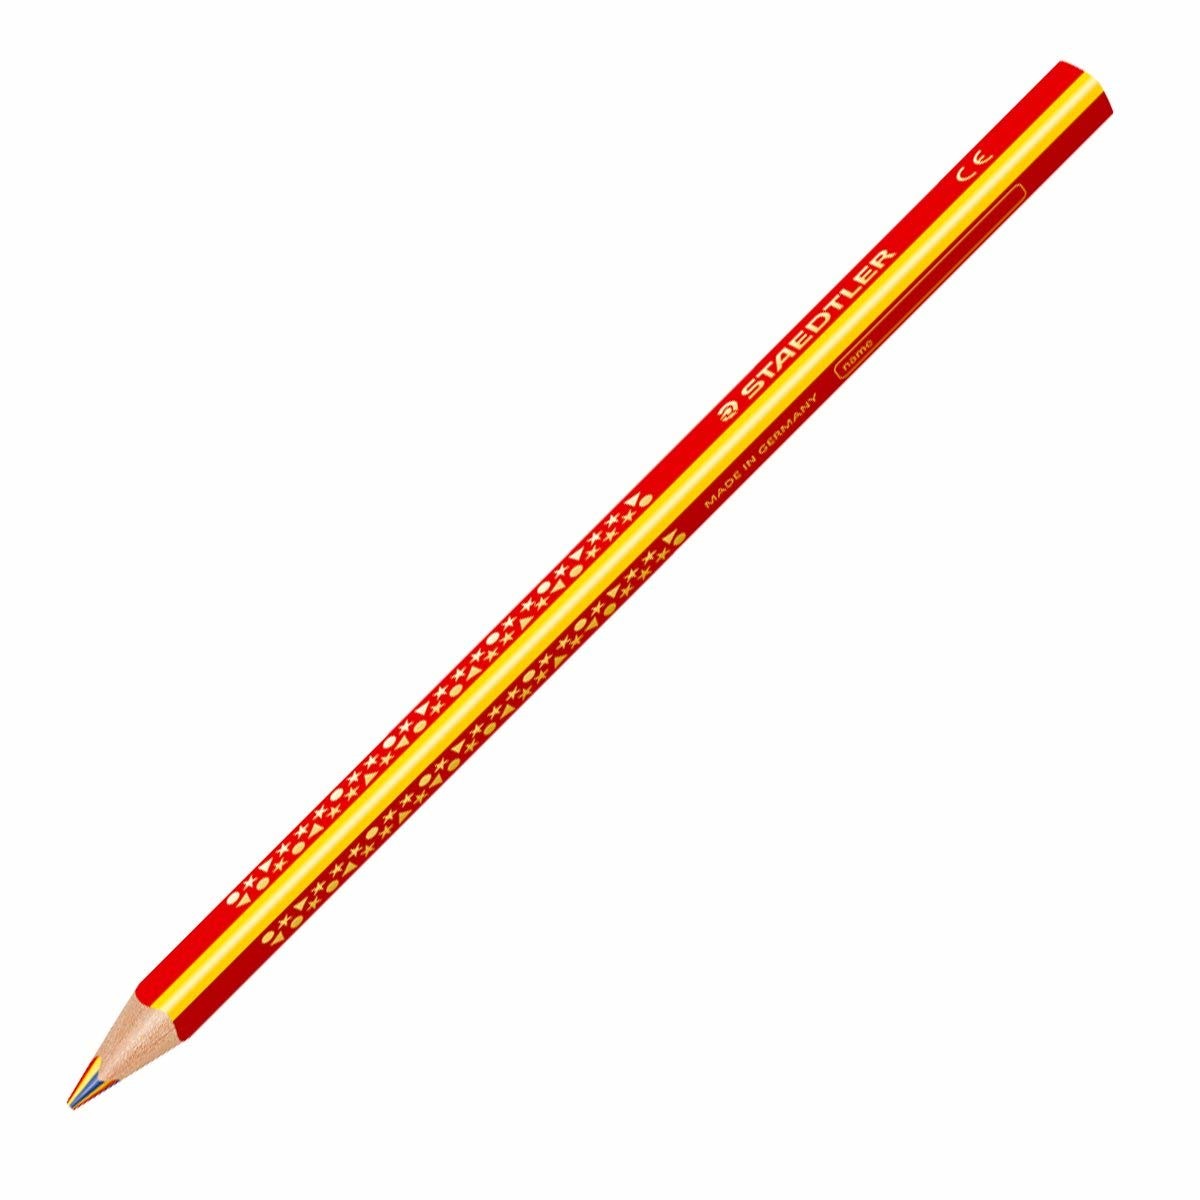 STAEDTLER Crayon de couleur Noris Club 1274KP50 rouge, jaune, bleu 50 pcs.